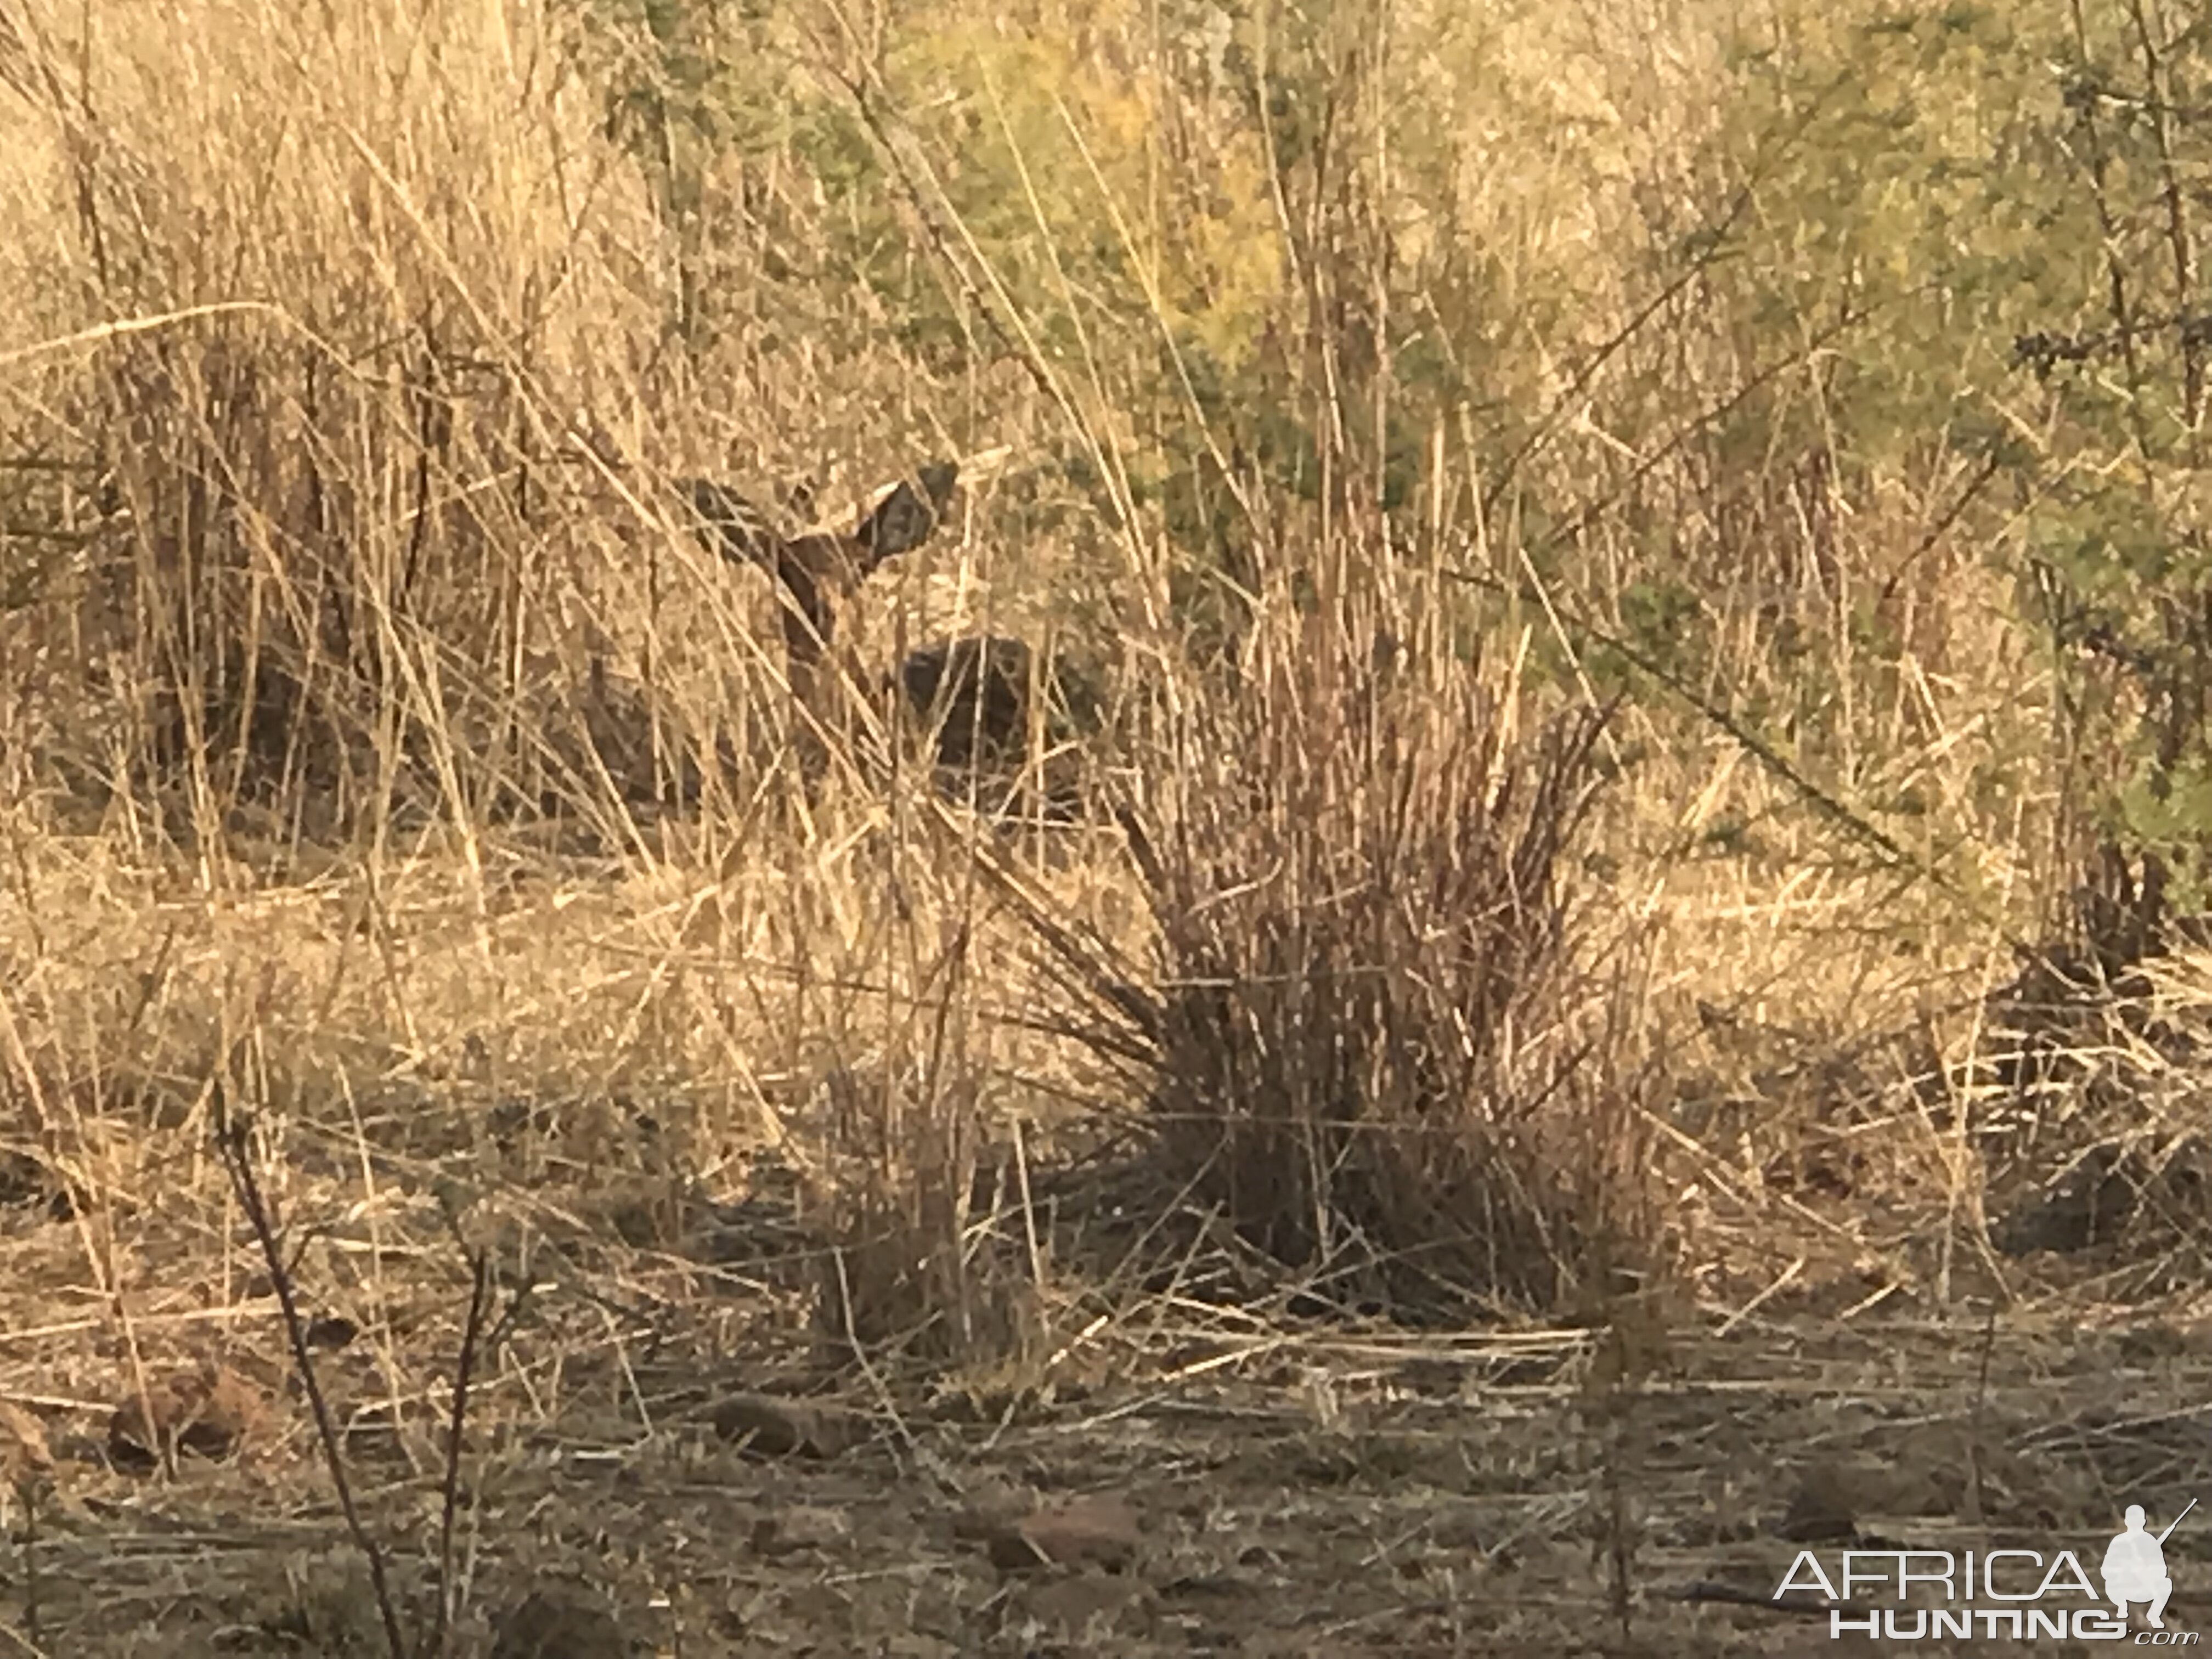 Steenbok in the grass